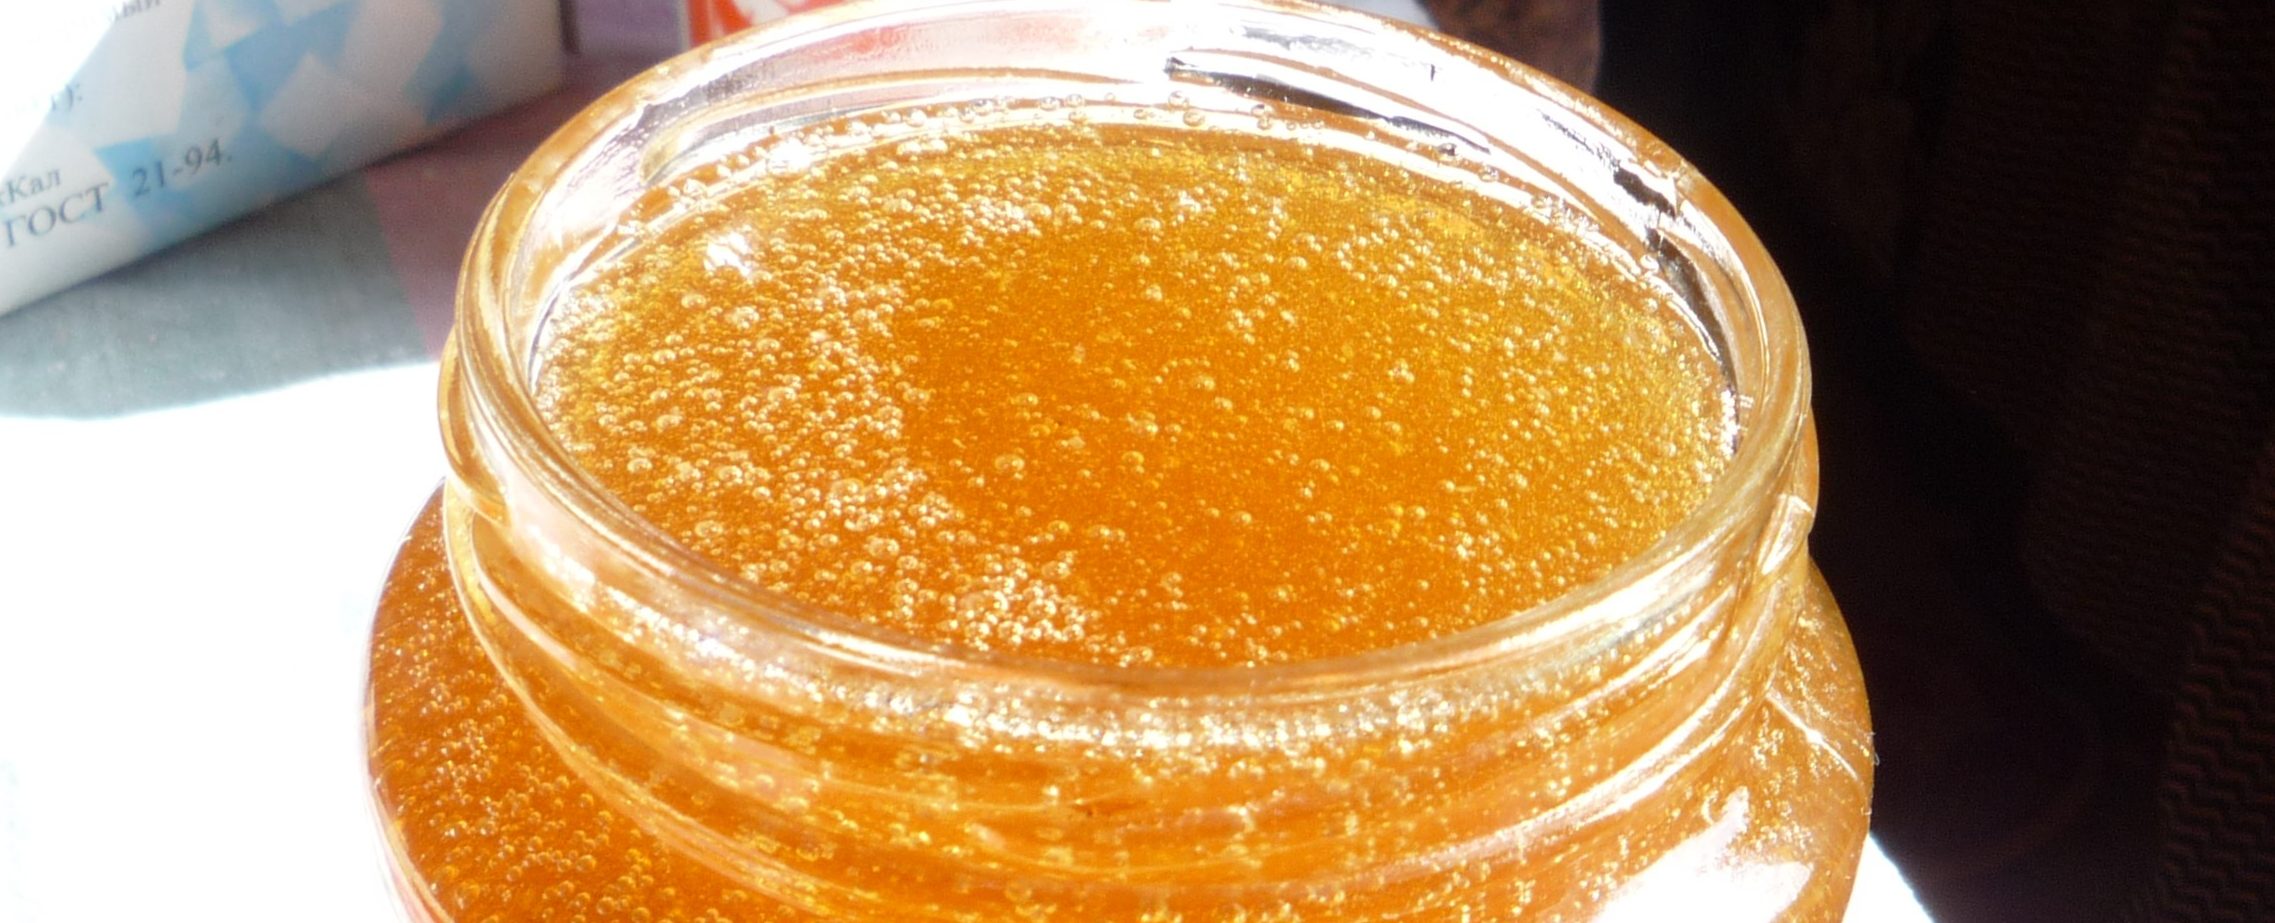 вкусный и полезный мед